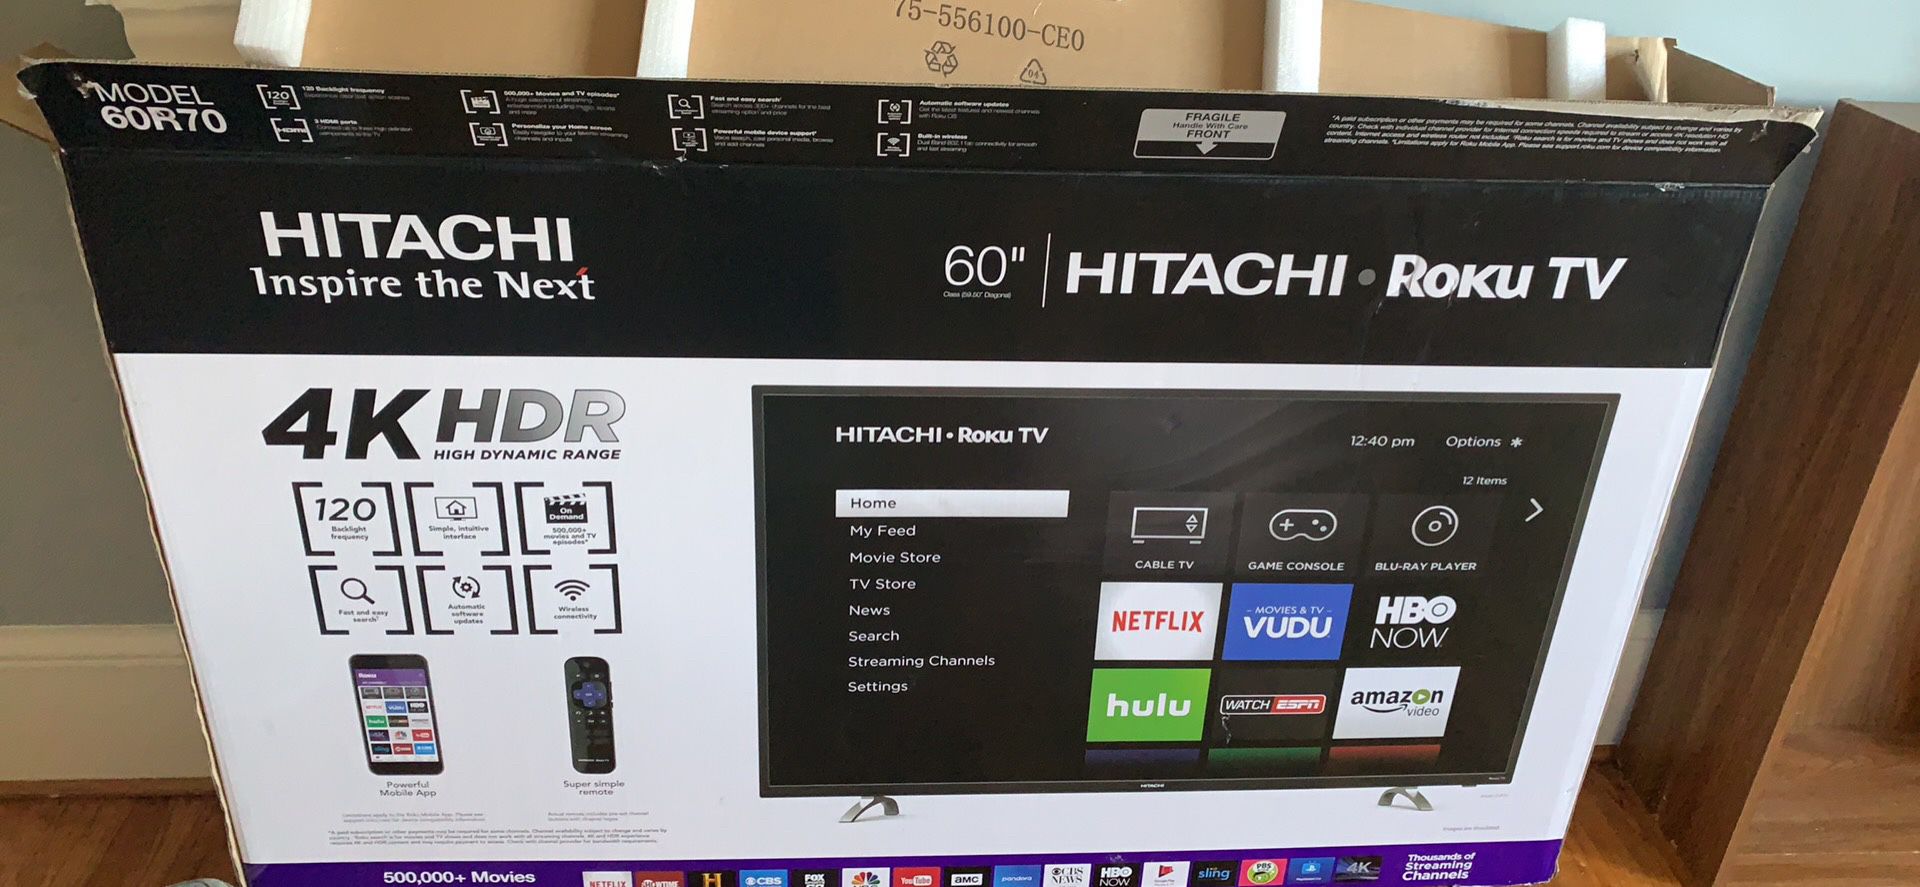 60” Hitachi roku tv